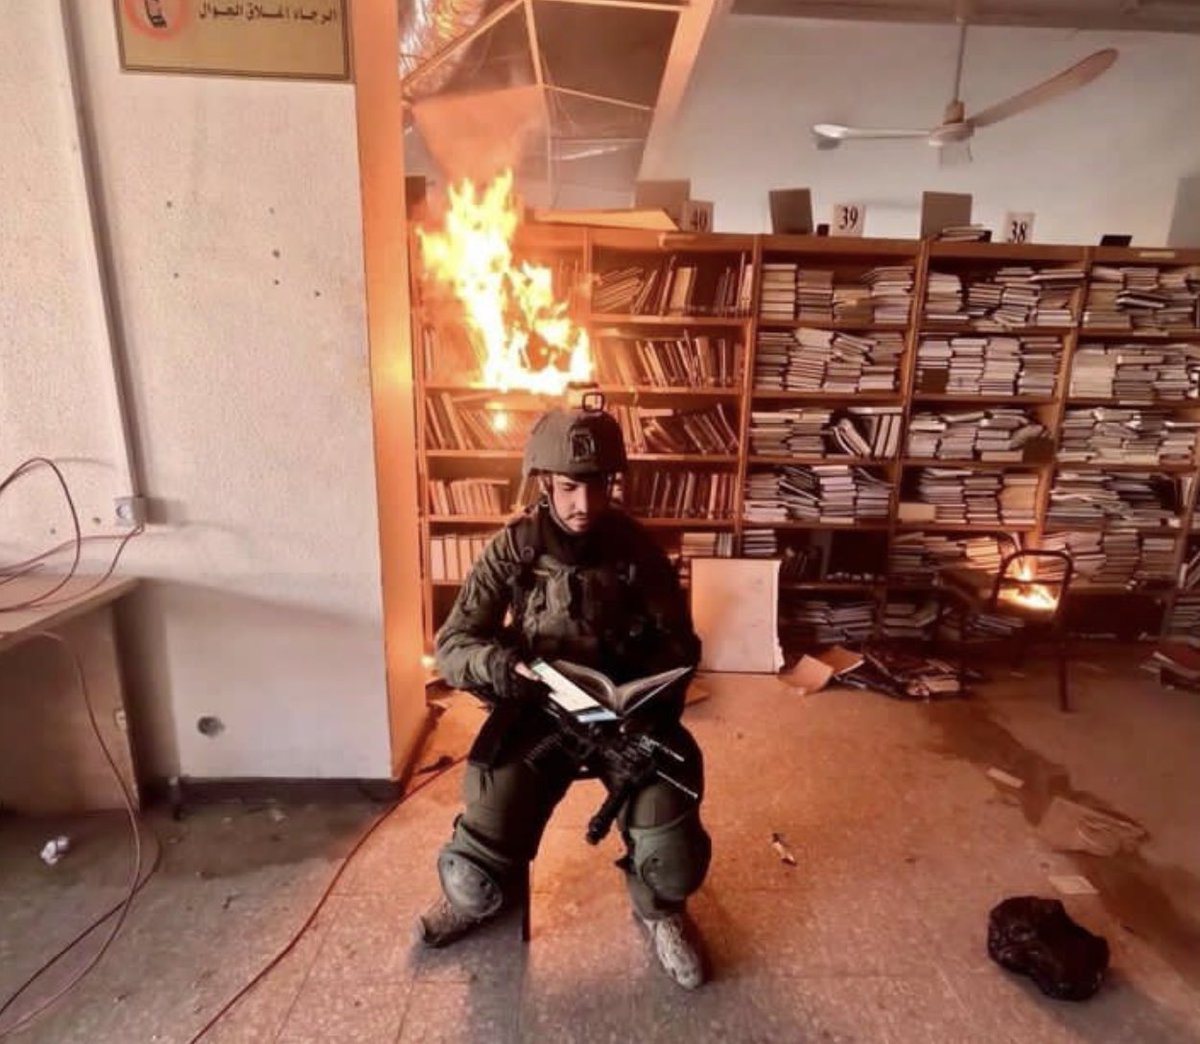 Ein israelischer Soldat posiert in der Bibliothek der Al-Aqsa-Universität in Gaza, nachdem er die Bücher im Brand gesetzt hat.

Die Bibliothek wurde vollständig niedergebrannt. Israels Armee hat alle 12 Universitäten in Gaza systematisch zerstört. Bücherverbrennung passt zu den